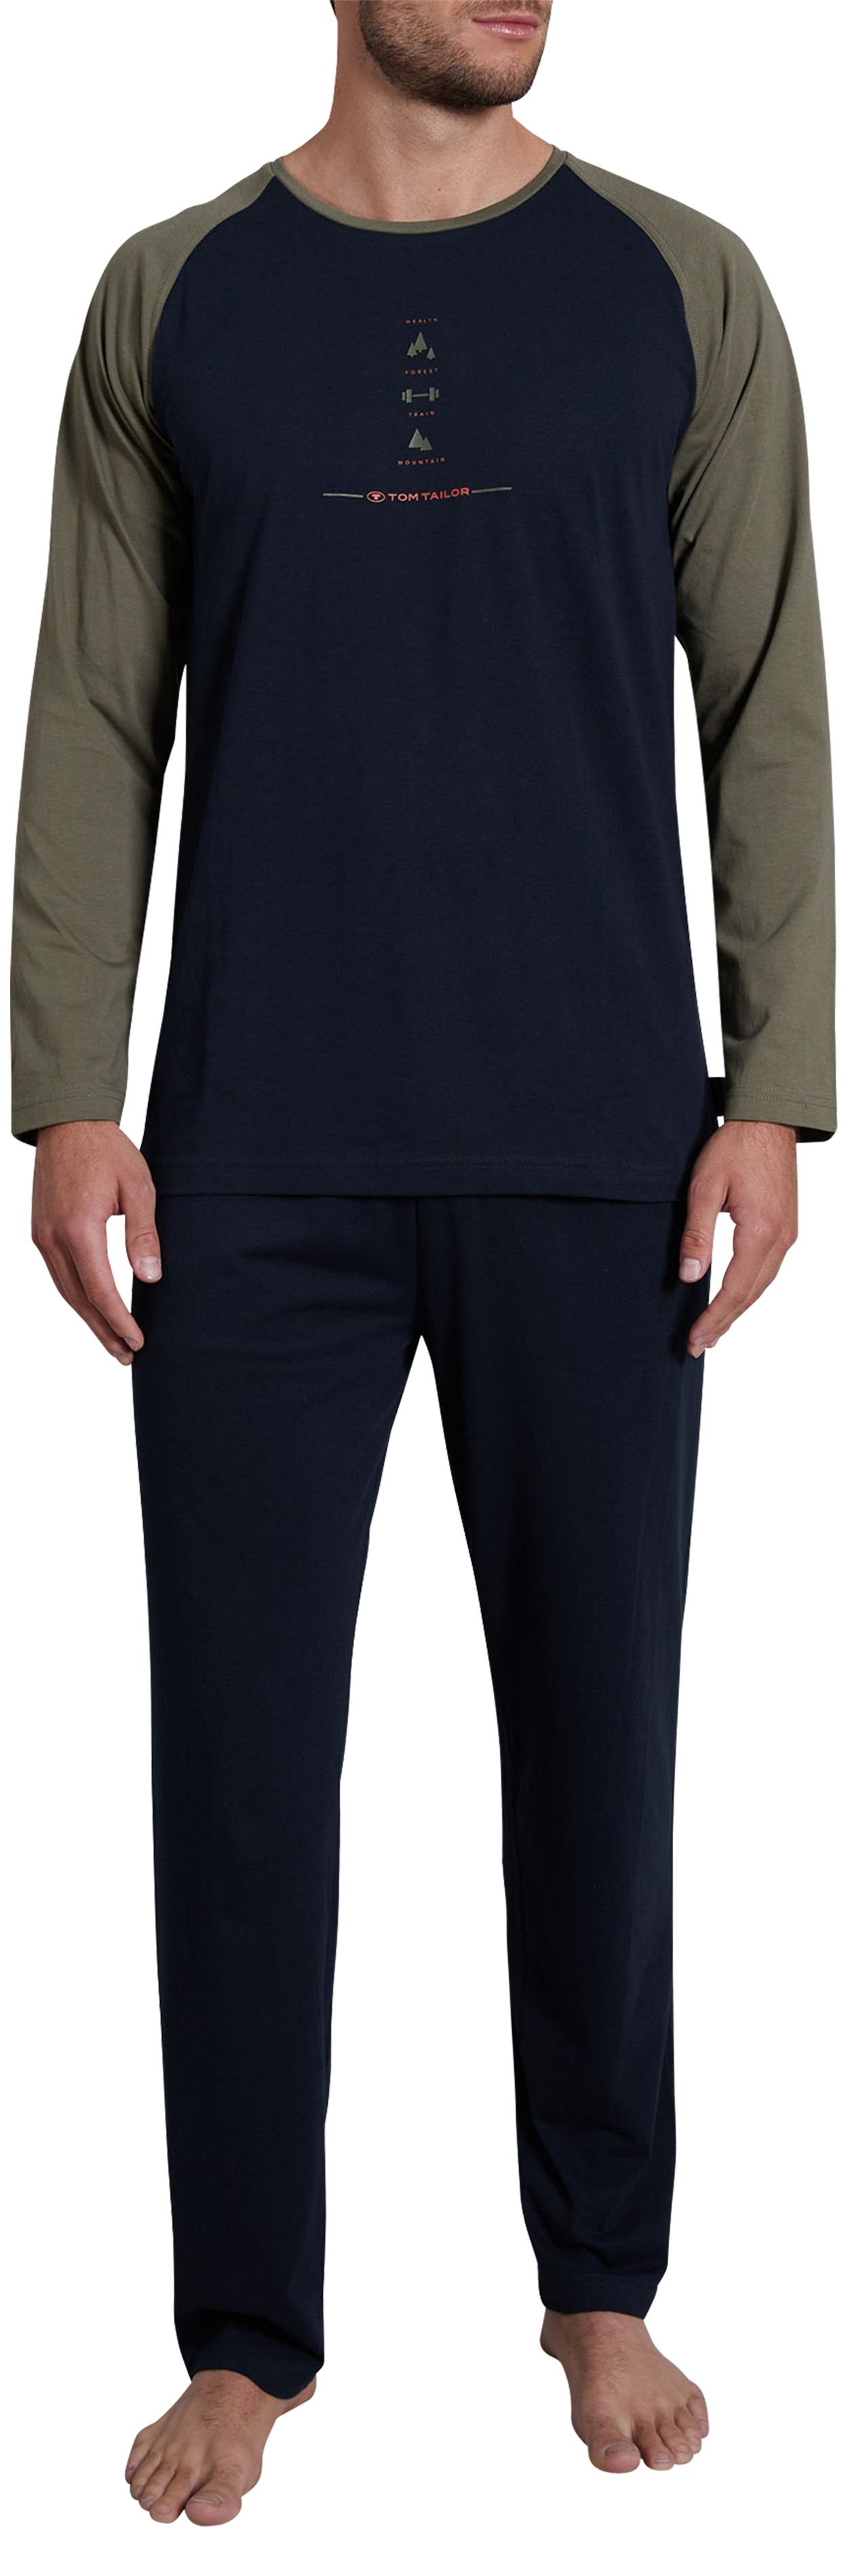 pyjama long tom tailor avec manches longues et col rond marine bicolore